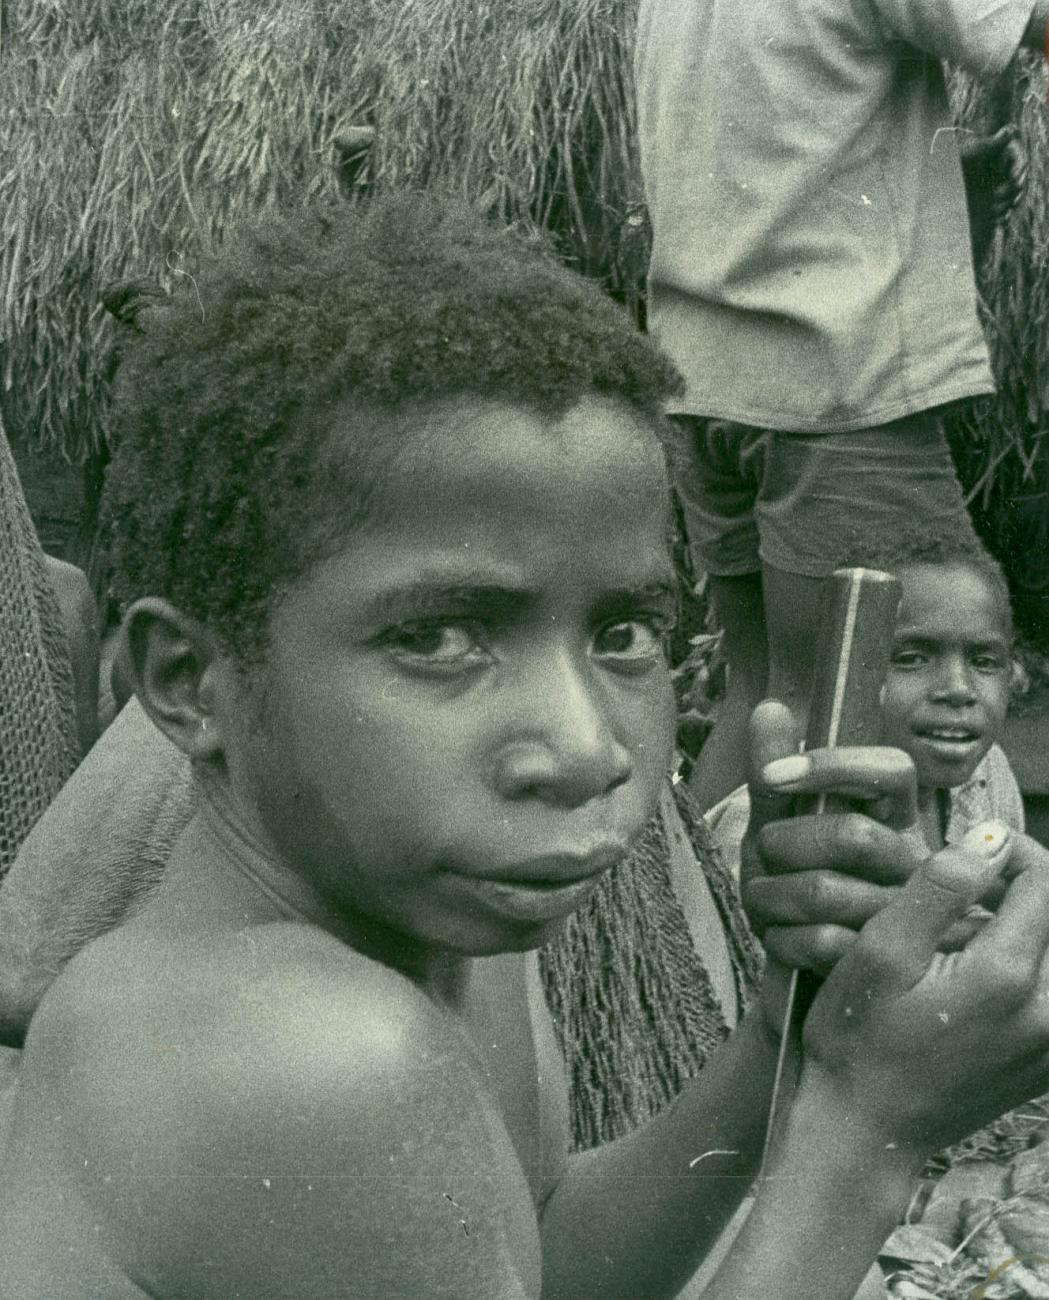 BD/40/76 - 
Papua child
